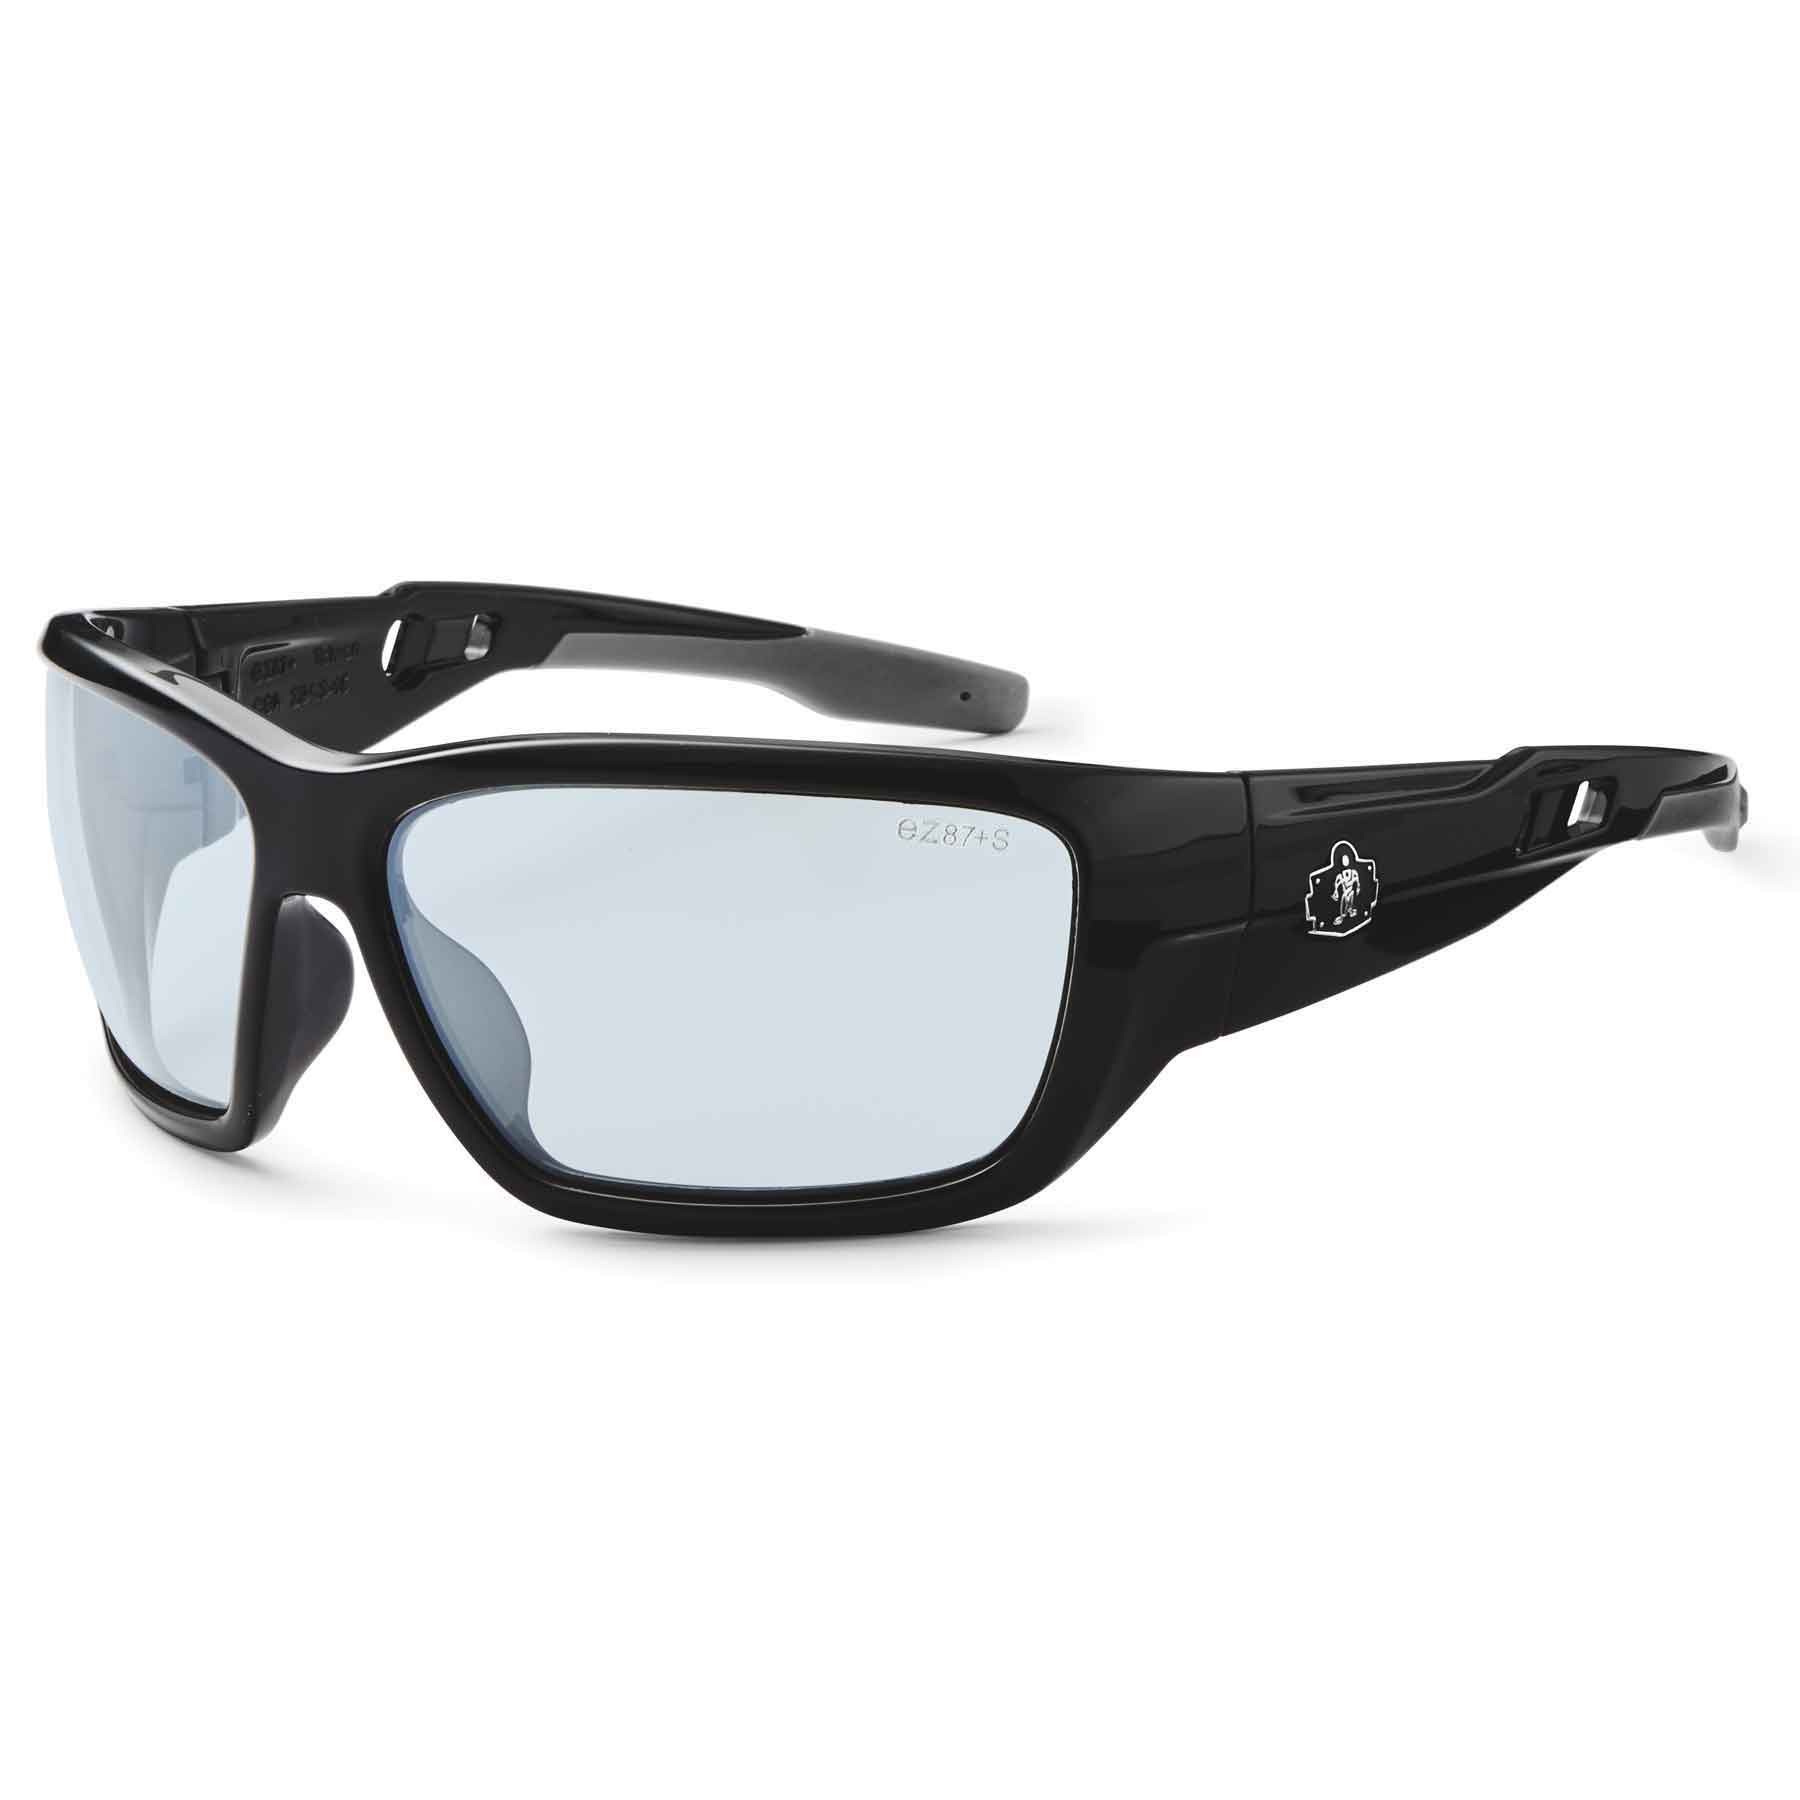 Ergodyne Baldr 57083 Safety Glasses - Black Frame - Indoor/Outdoor